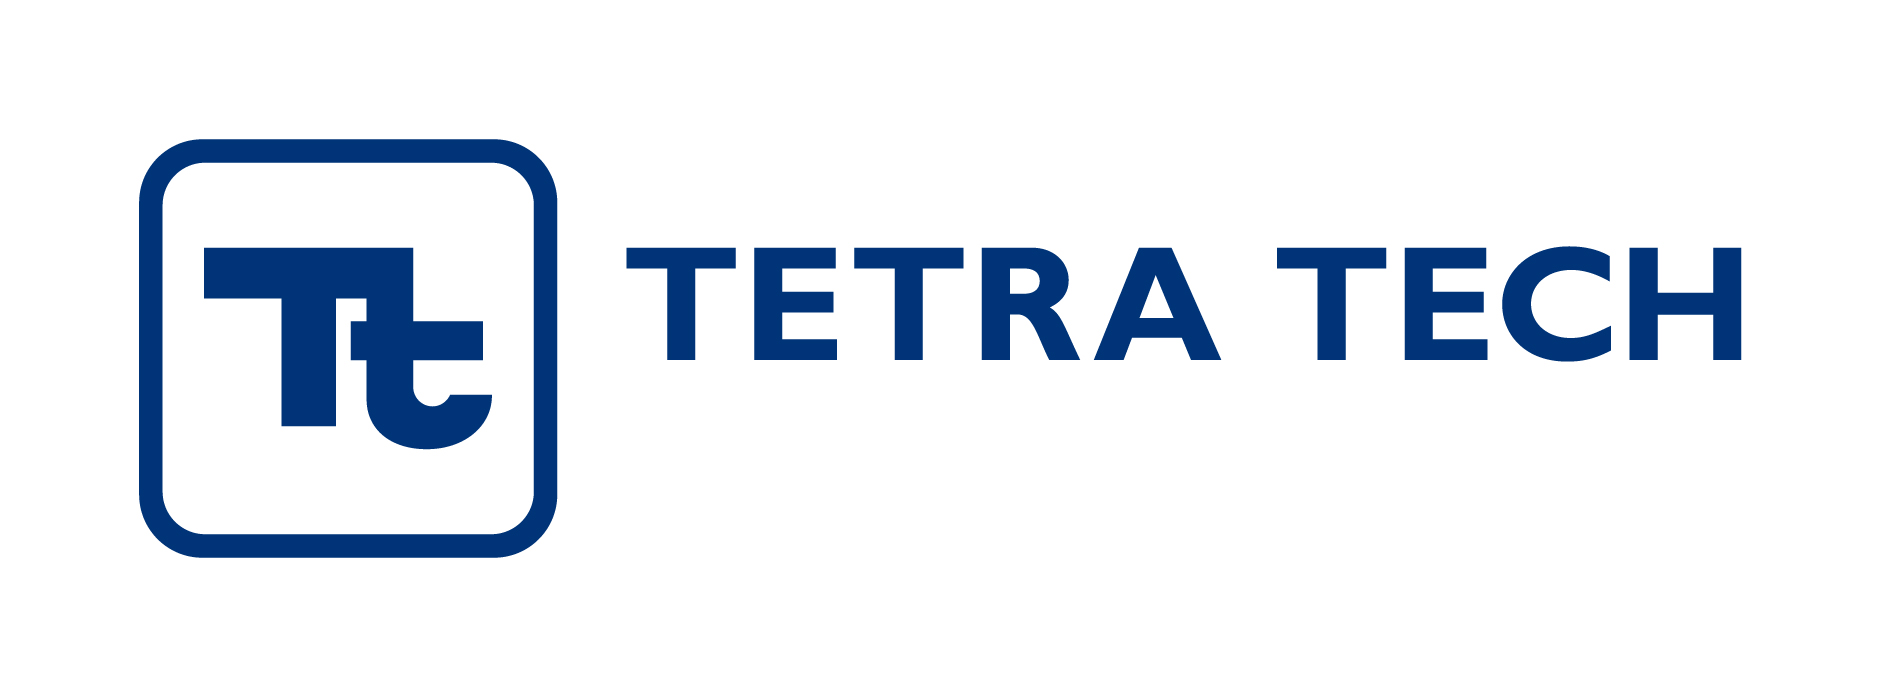 https://www.tetratech.com/ Logo